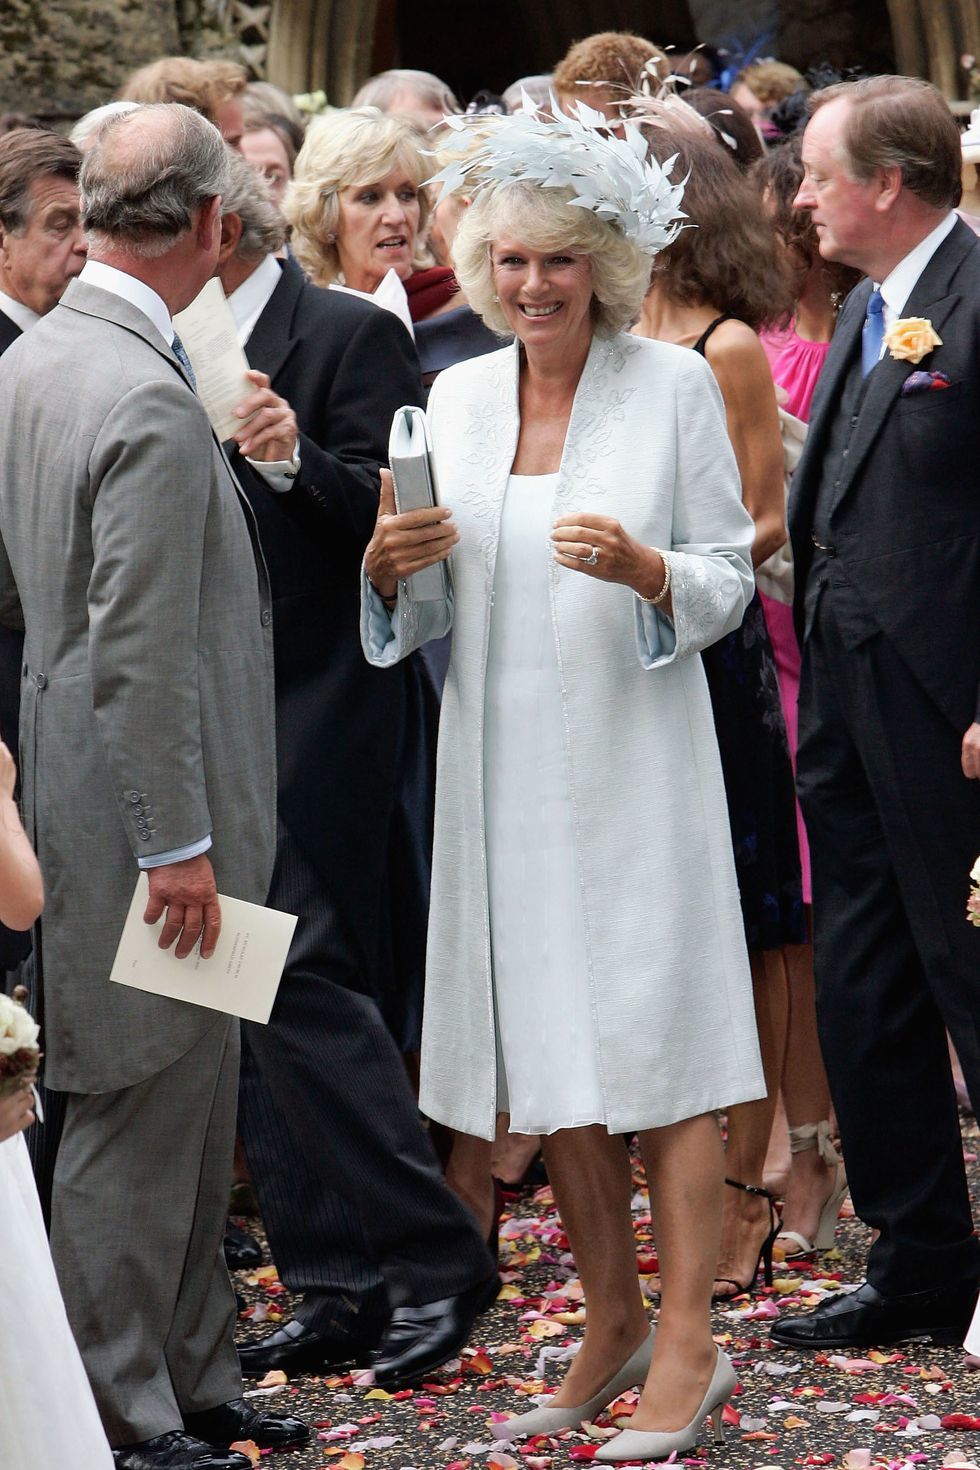 17 năm mặc đồ thanh lịch, Vương hậu nước Anh tương lai nổi bật nhờ một món đồ - Ảnh 5